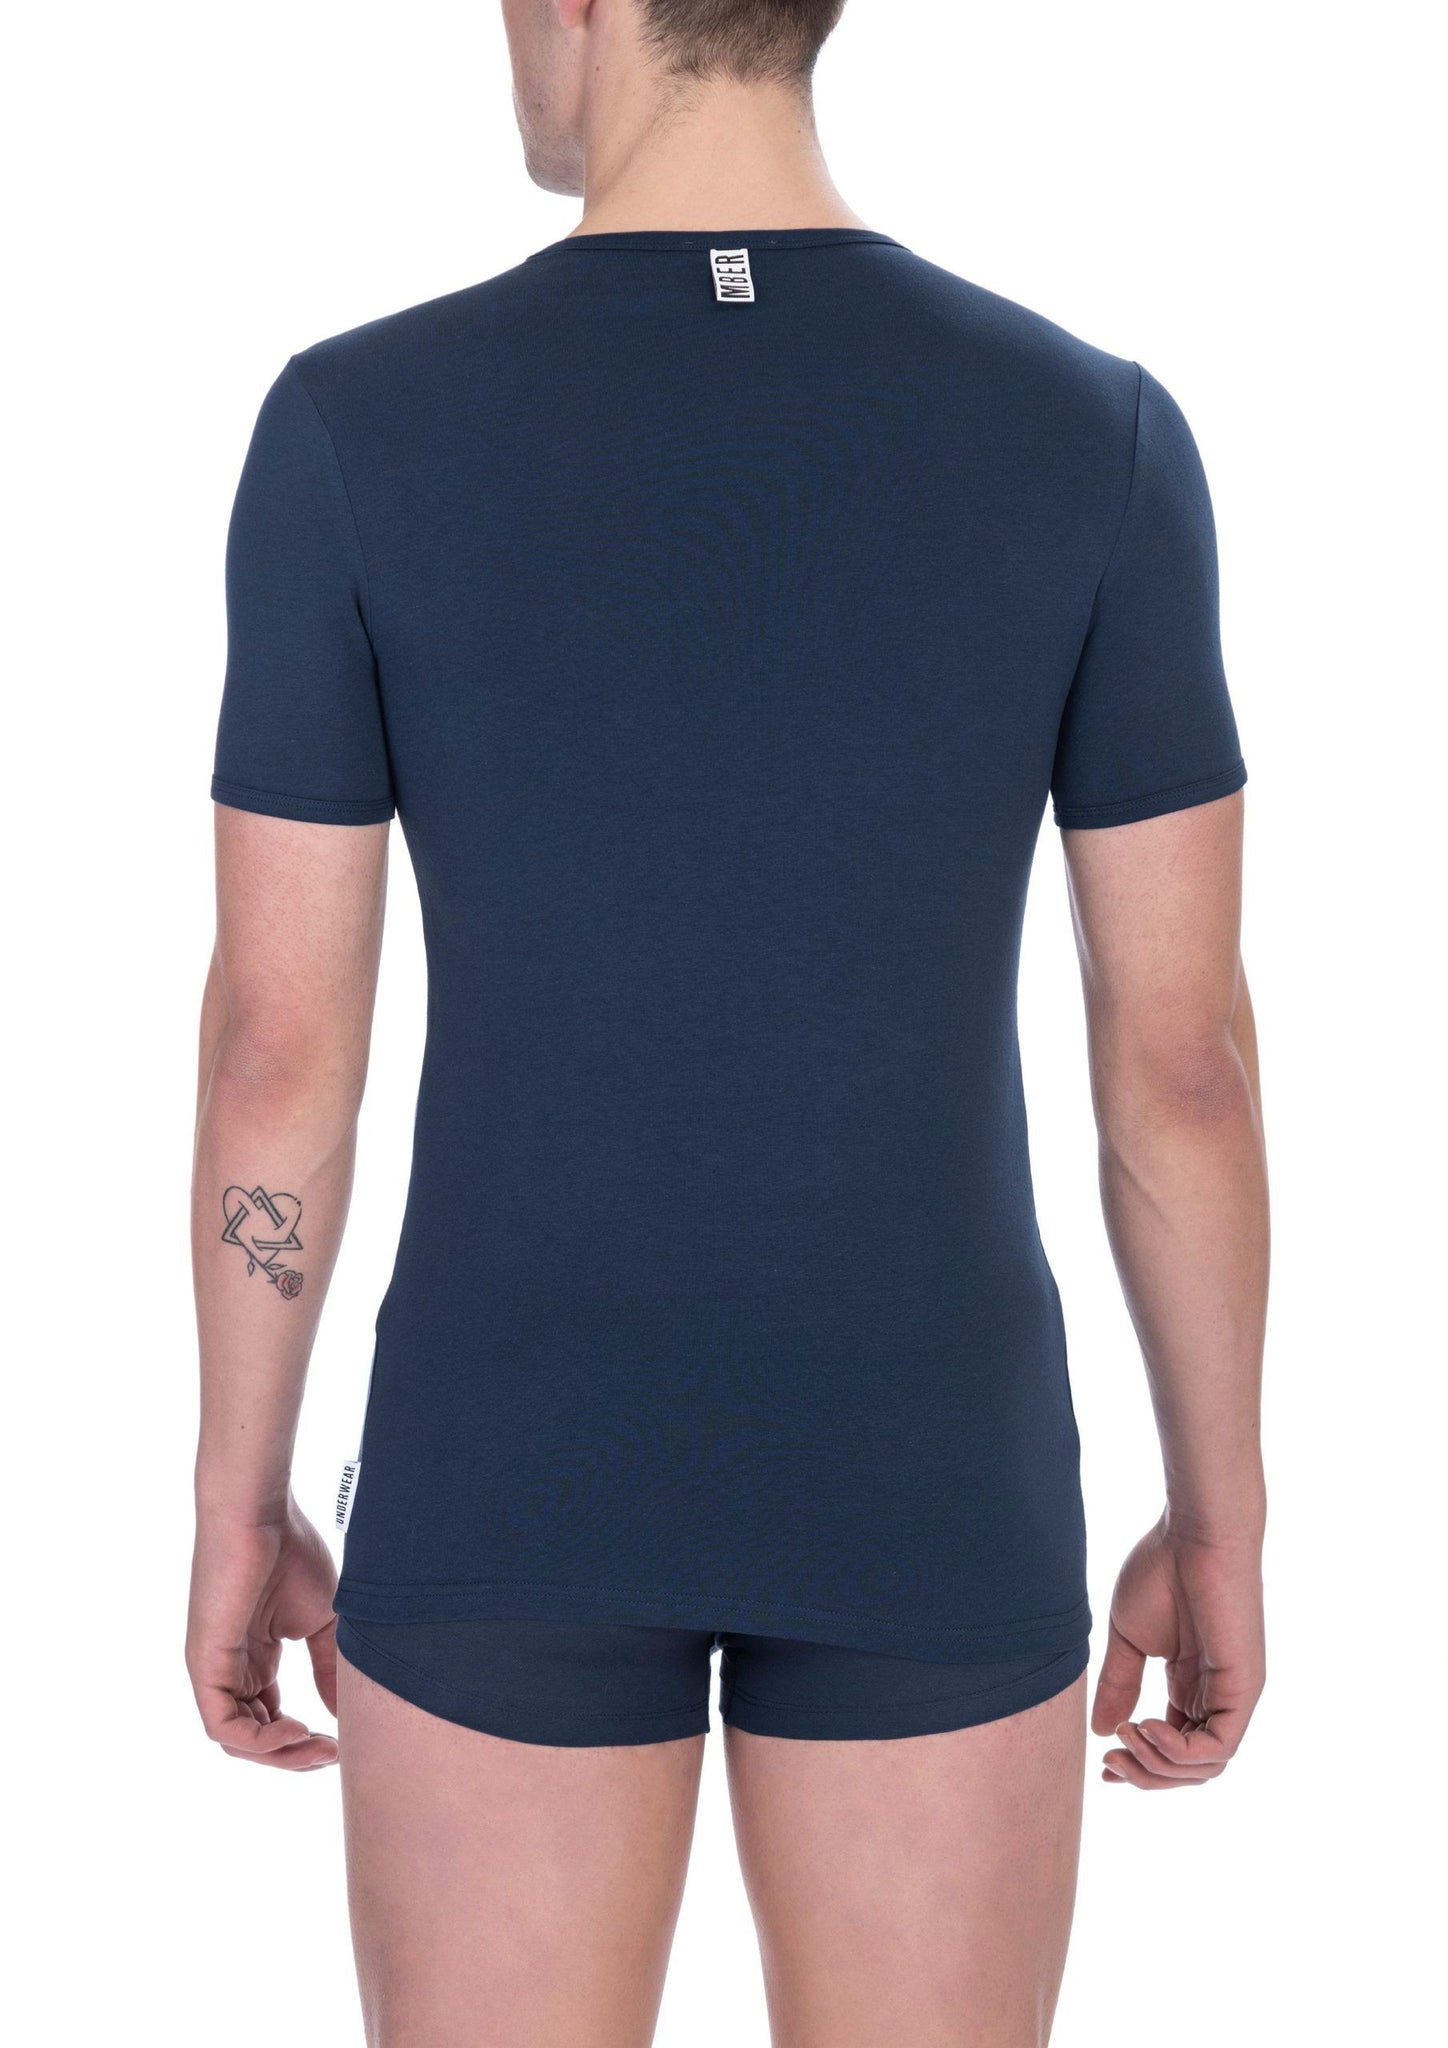 Bikkembergs Sleek V-Neck Cotton Blend T-Shirt